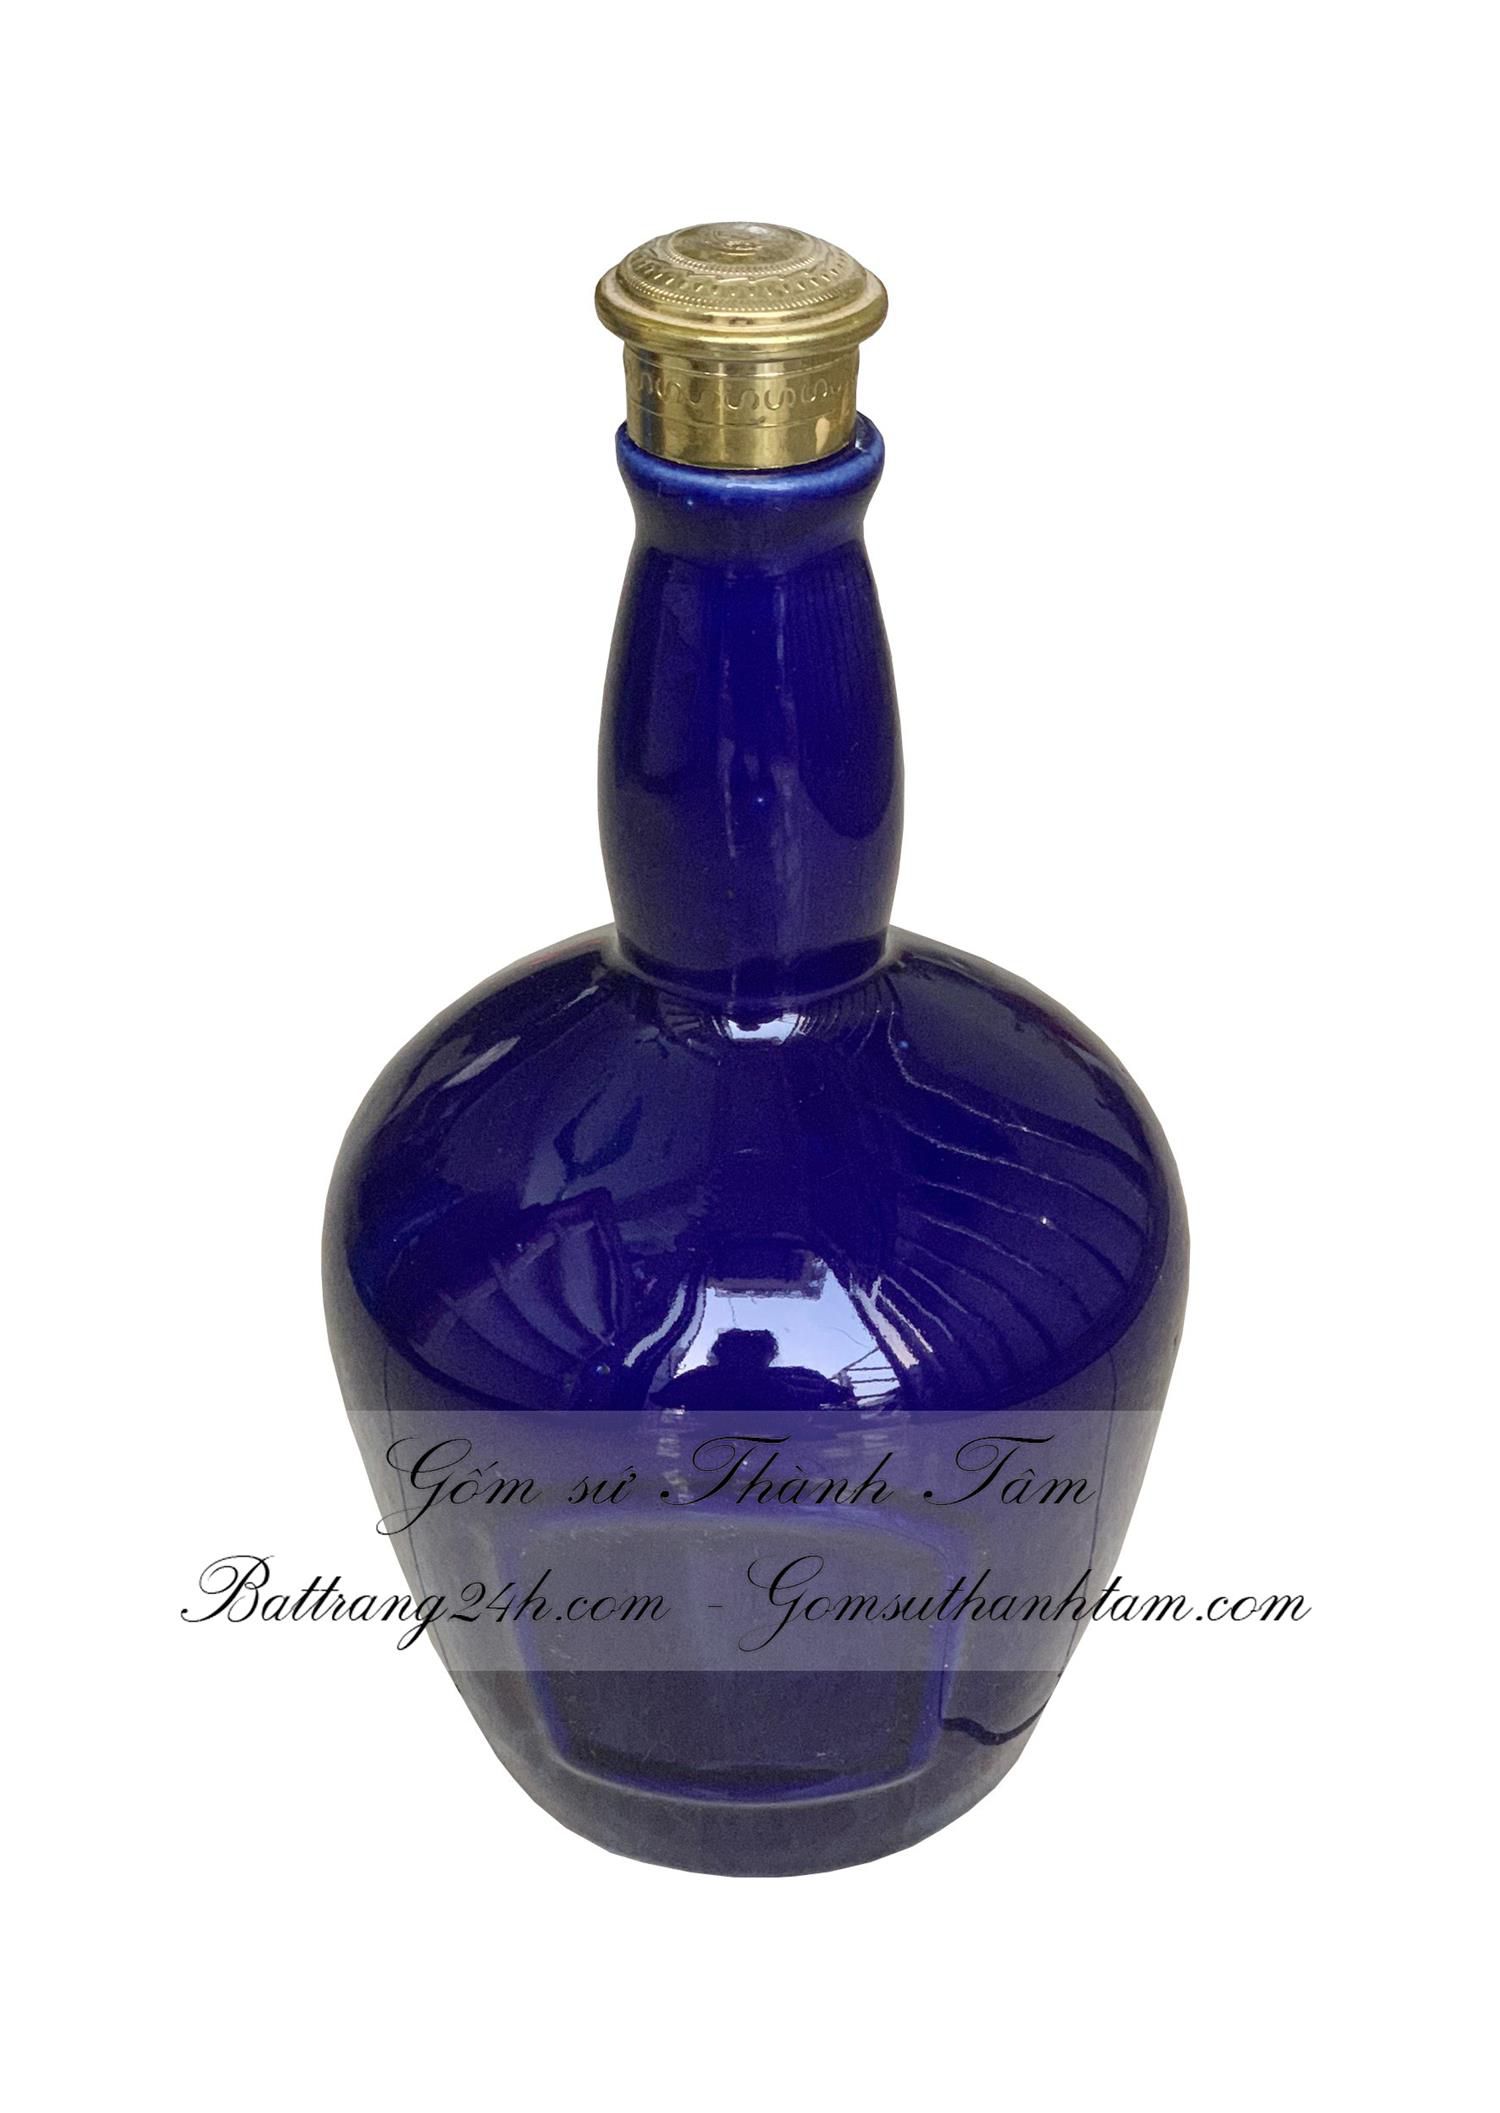 Mua nậm rượu gốm sứ Bát Tràng men xanh bóng in logo đẹp mắt, nậm rượu giá cả tốt nhất thị trường